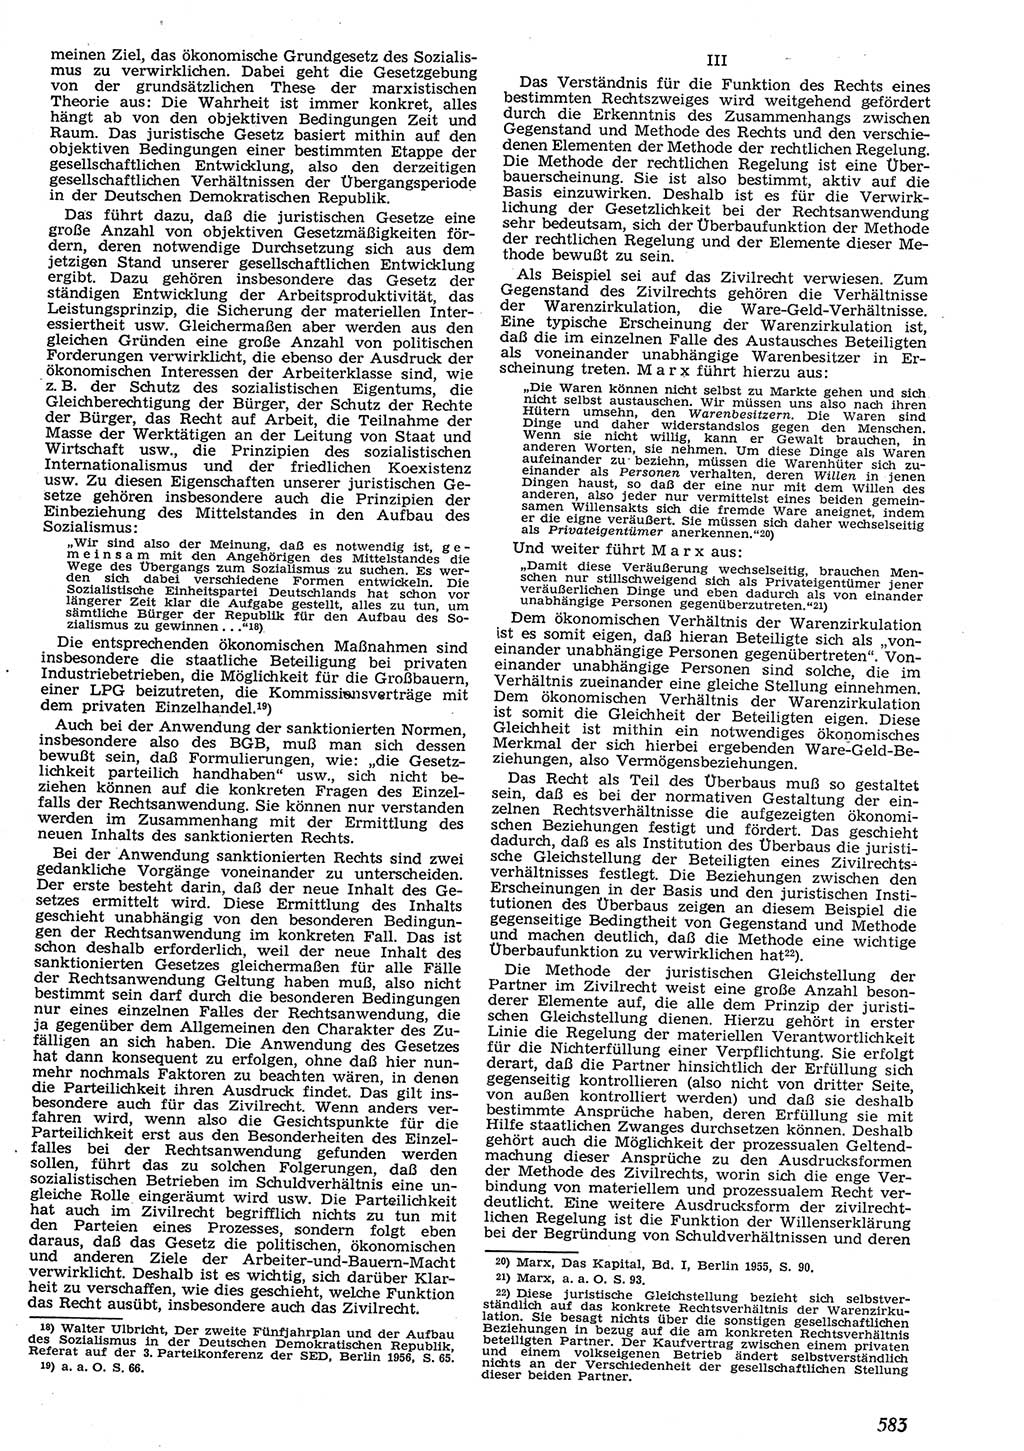 Neue Justiz (NJ), Zeitschrift für Recht und Rechtswissenschaft [Deutsche Demokratische Republik (DDR)], 10. Jahrgang 1956, Seite 583 (NJ DDR 1956, S. 583)